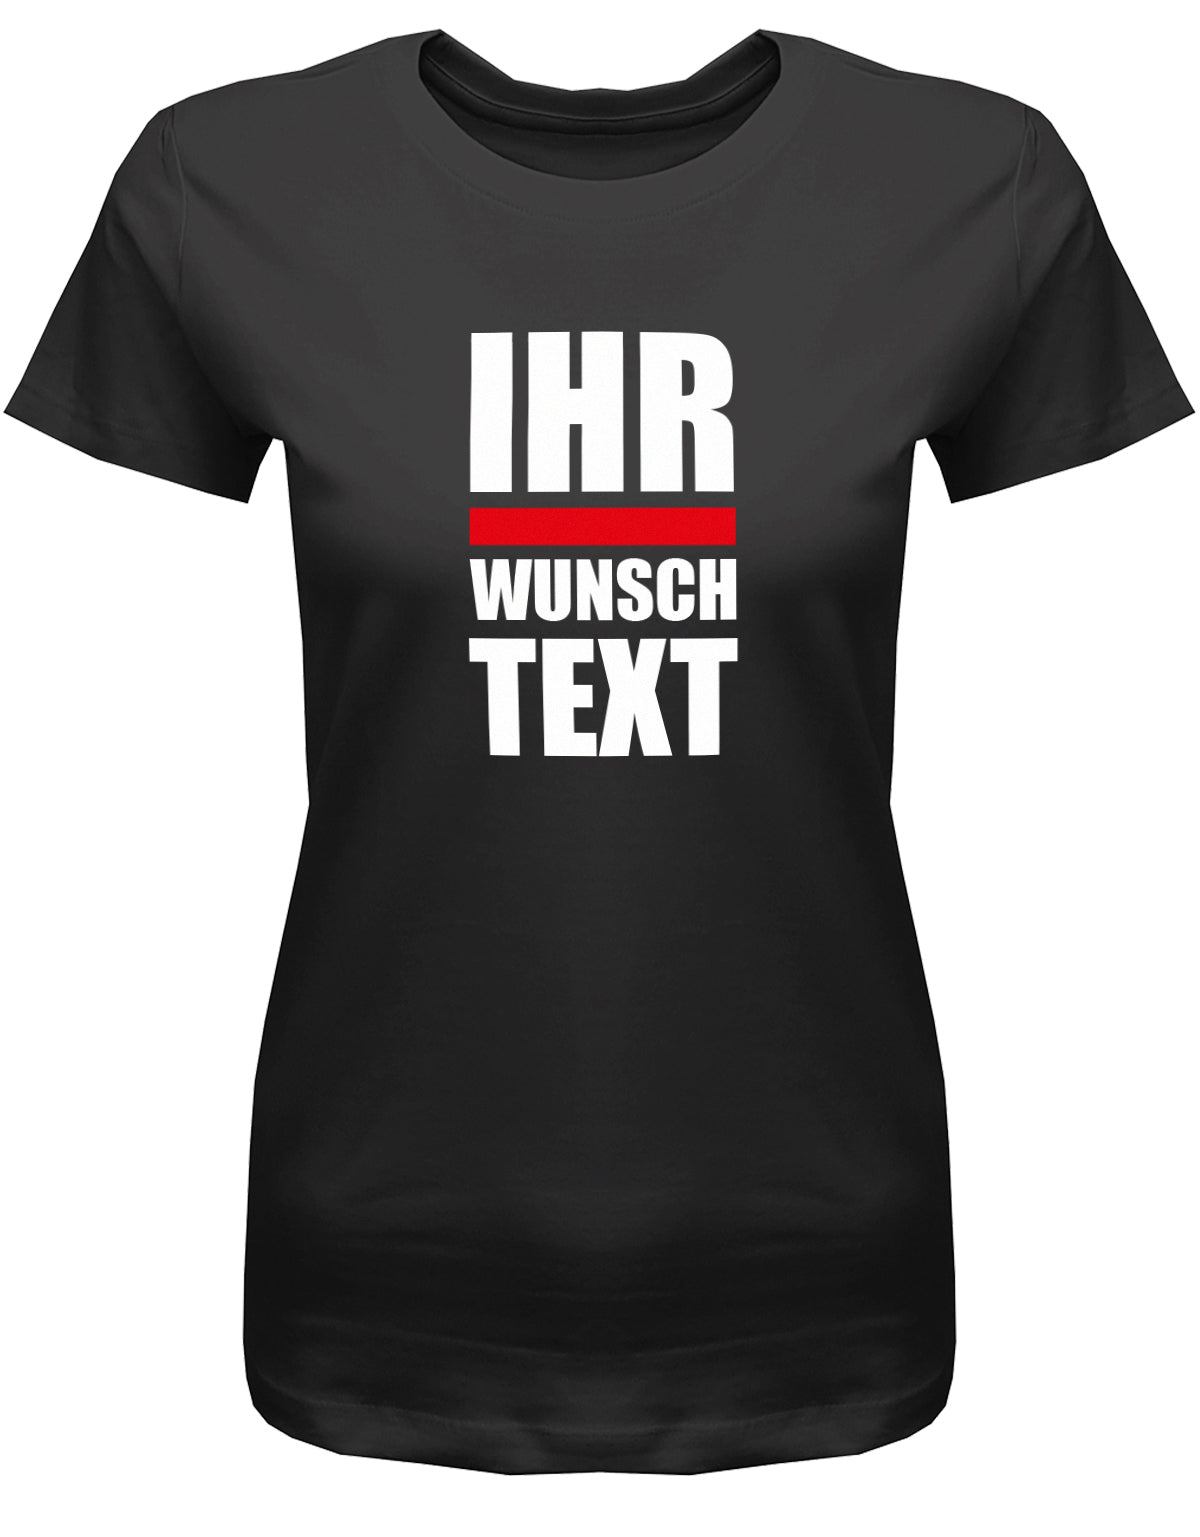 Frauen Tshirt mit Wunschtext.  Große Buchstaben mit Balken Block Style untereinander. Schwarz